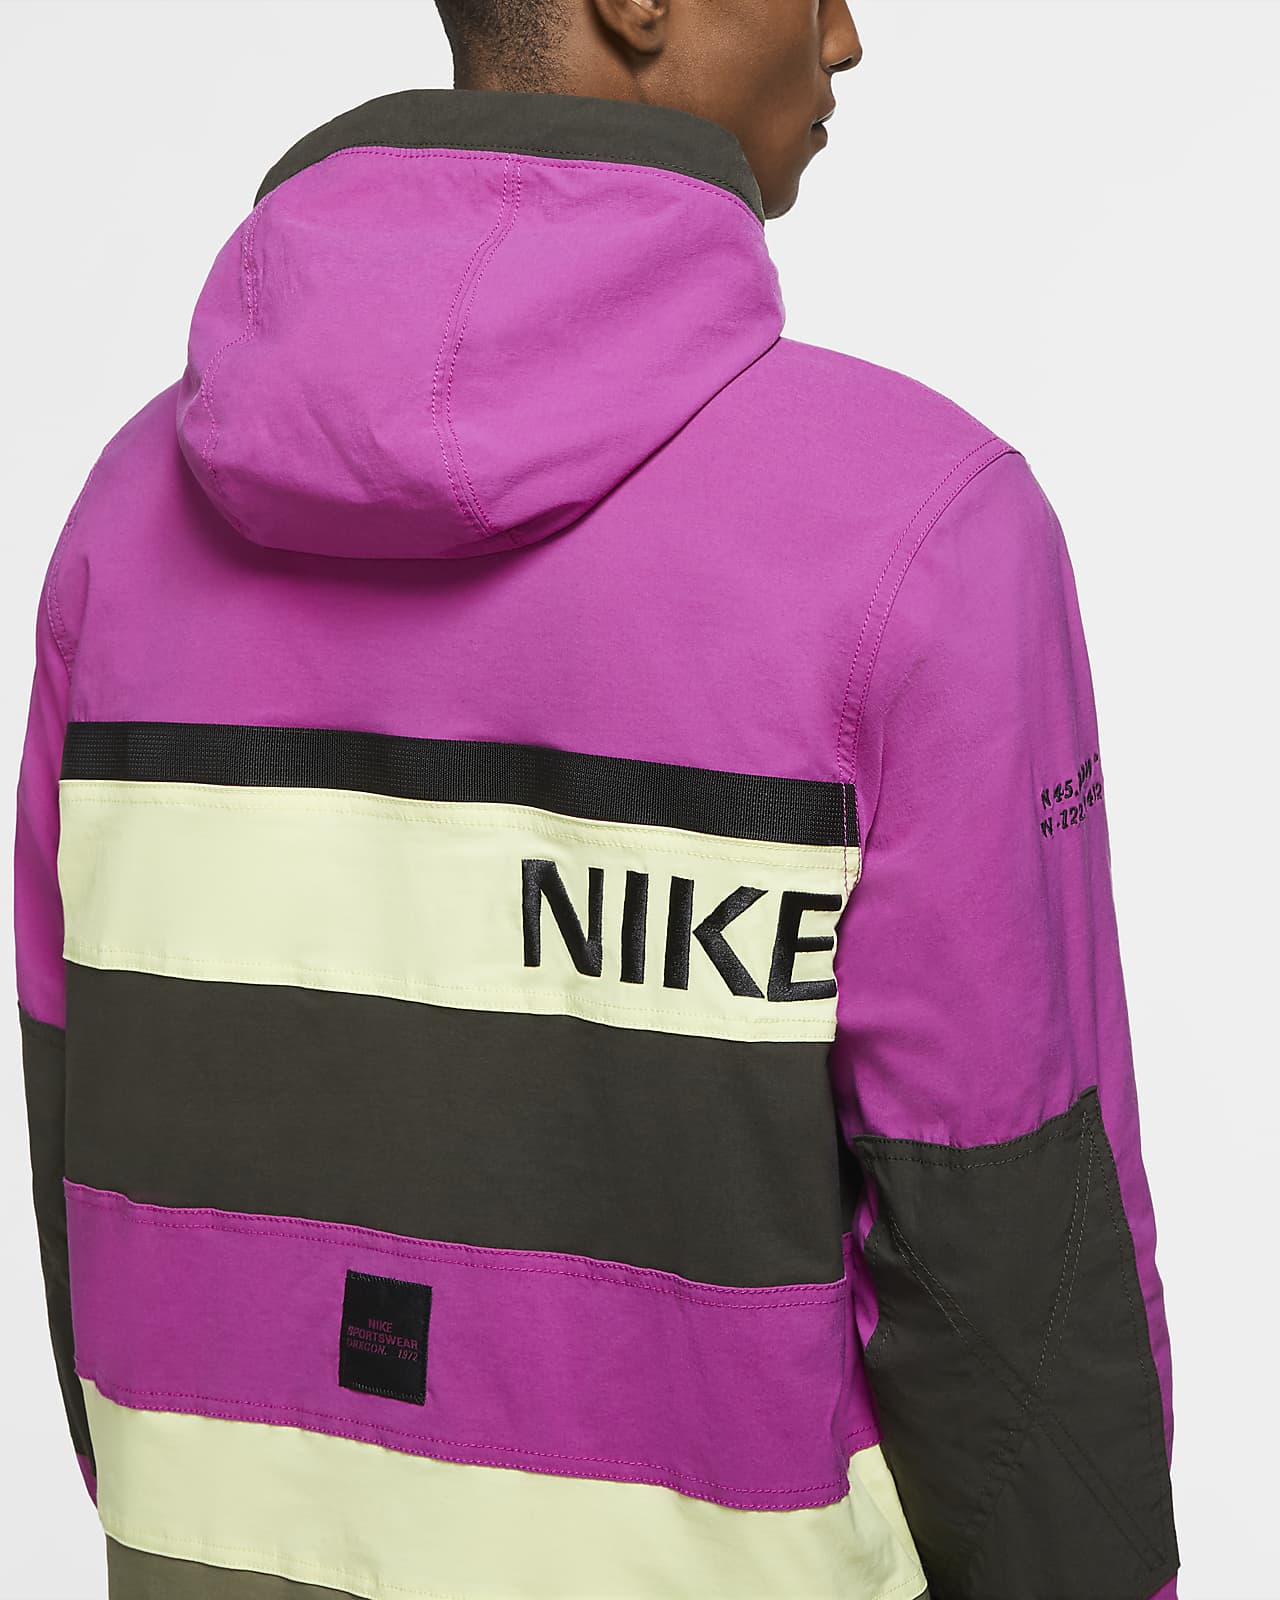 Nike Sportswear Men's Hooded Jacket